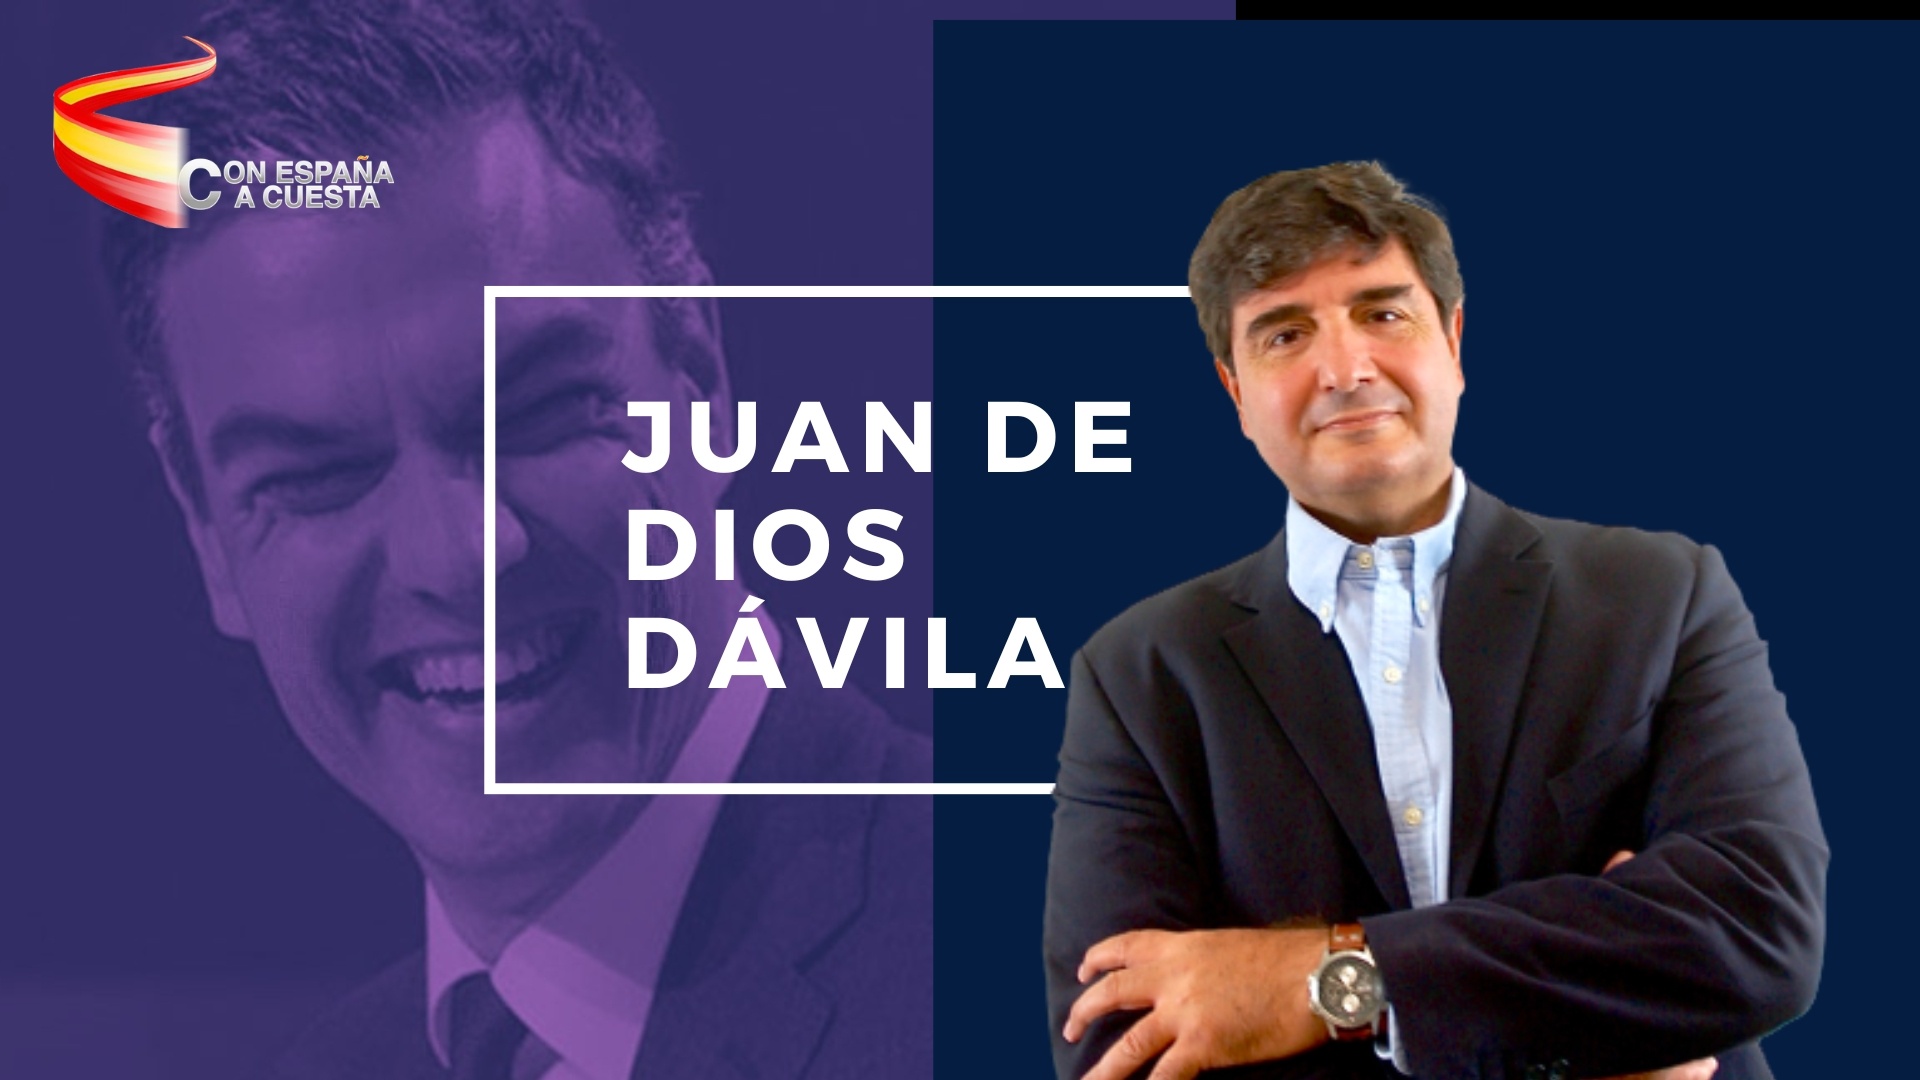 JUAN DE DIOS DÁVILA: ESTE GOBIERNO PARECE QUE TRABAJA EN CONTRA DEL BIENESTAR DE LOS ESPAÑOLES